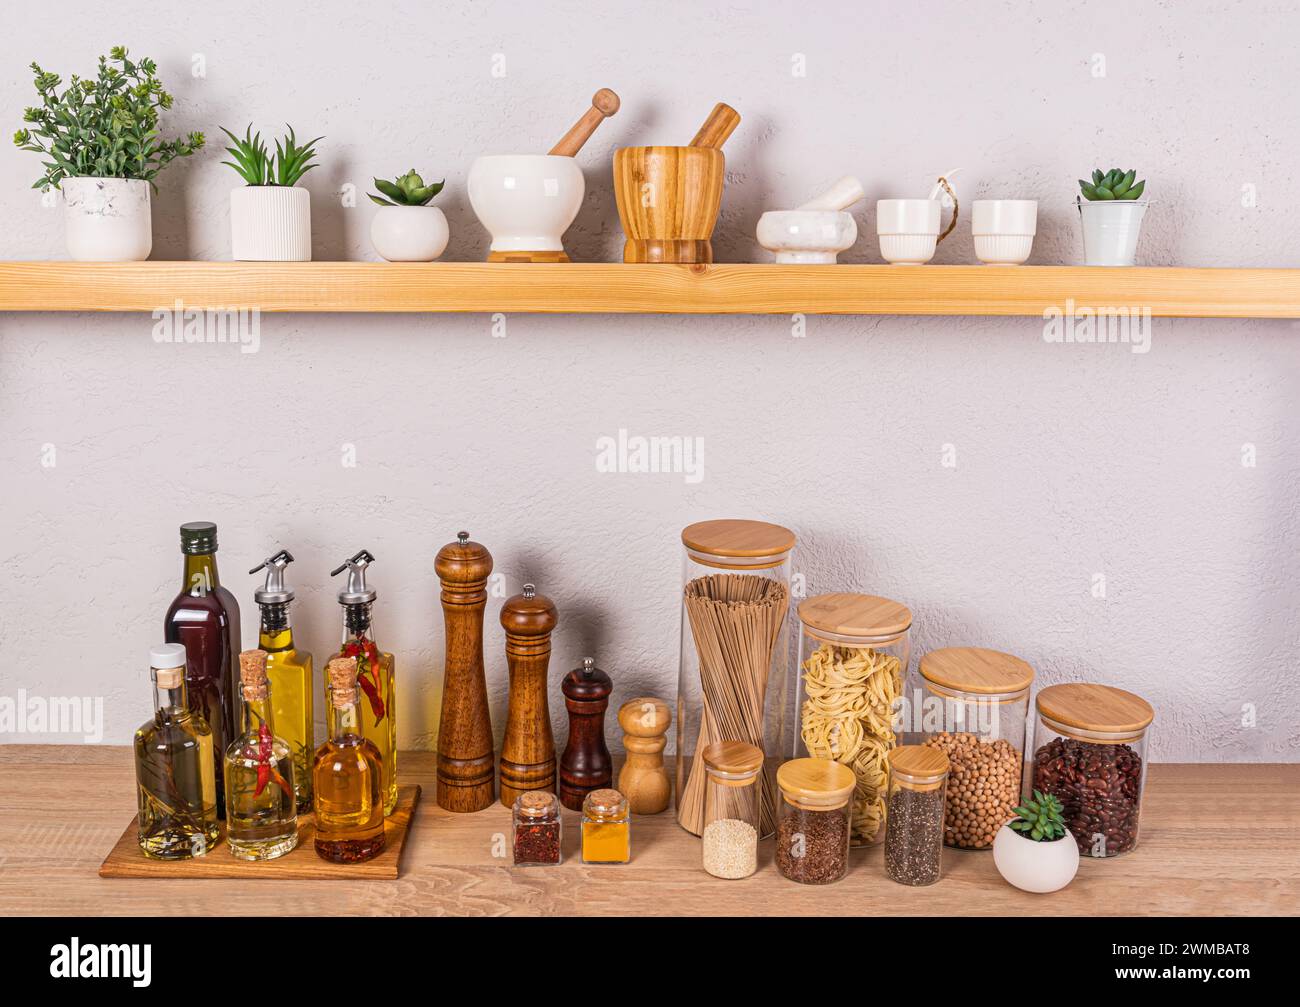 Fond de cuisine élégant avec un ensemble de bouteilles avec diverses huiles de cuisson, des pots en verre avec des épices. Vue de face d'une étagère en bois ouverte. Banque D'Images